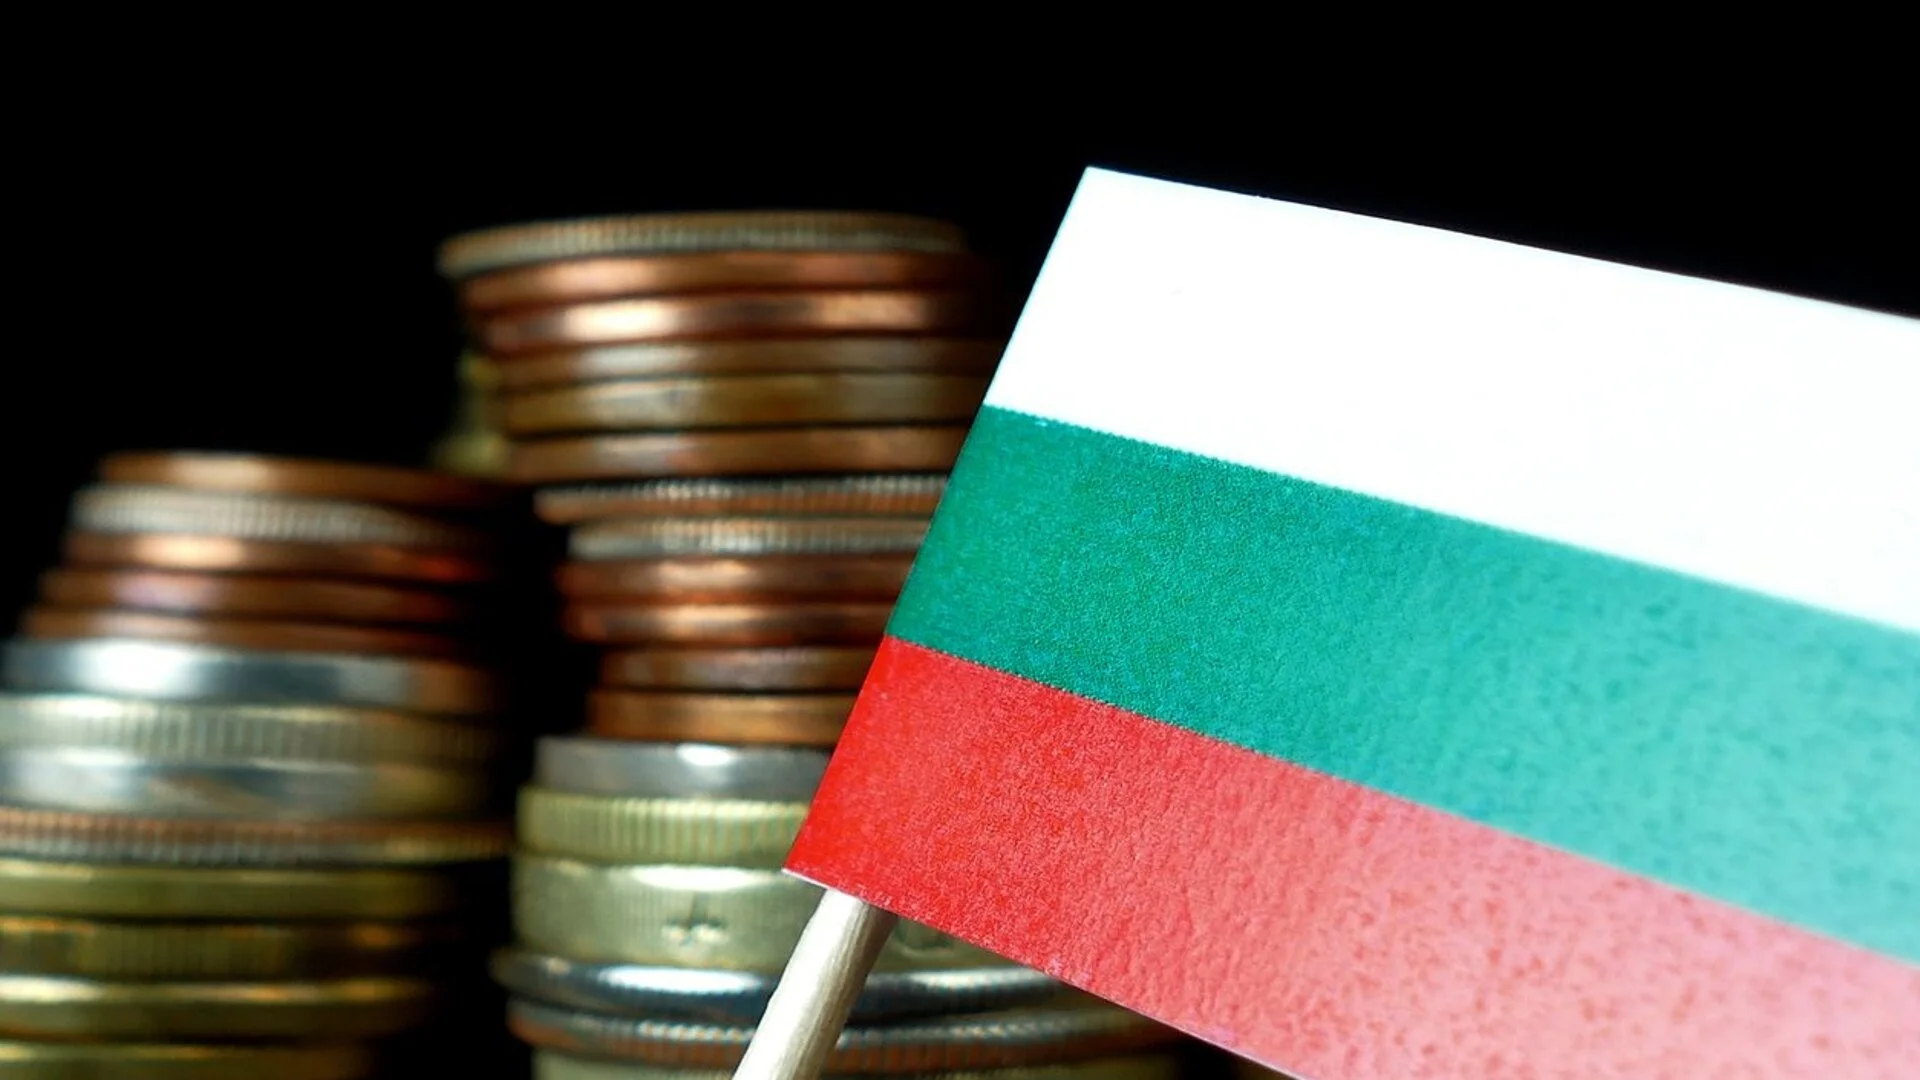 Прогноза на ООН: Какво ще се случи в България през следващите две години?